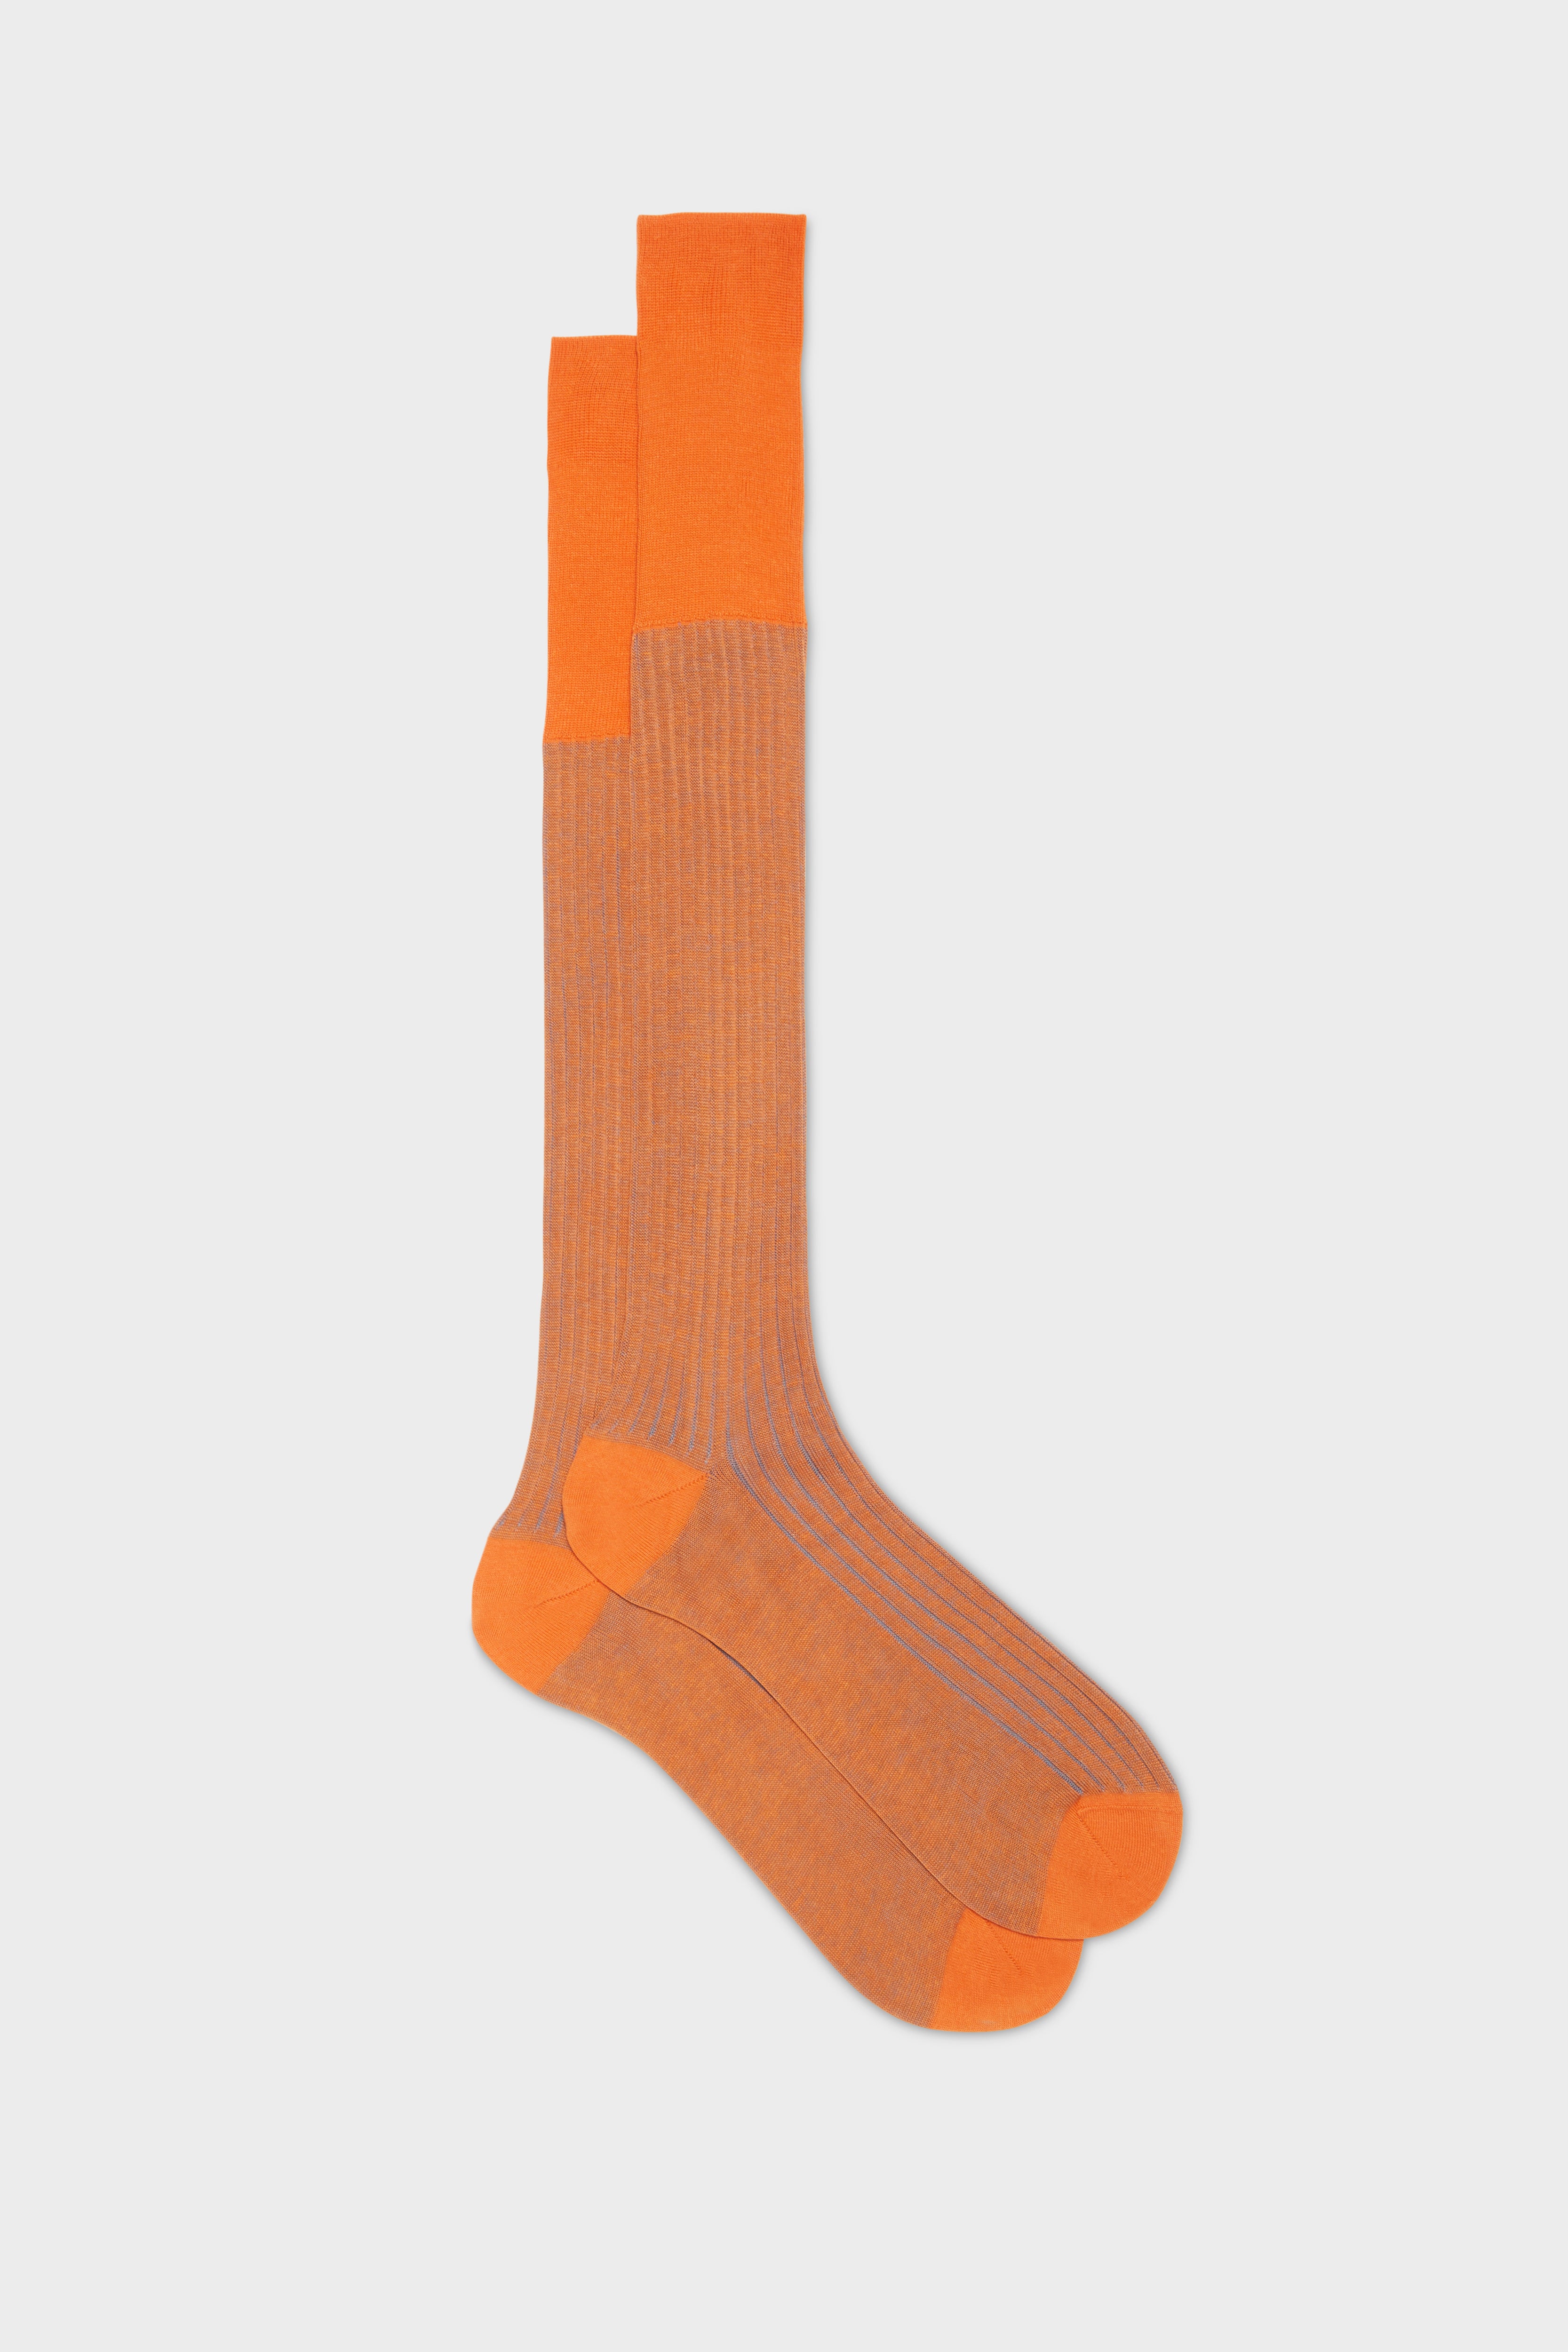 BRESCIANI - men's socks: Mario style. Cotton. Orange-blue – Bresciani Shop